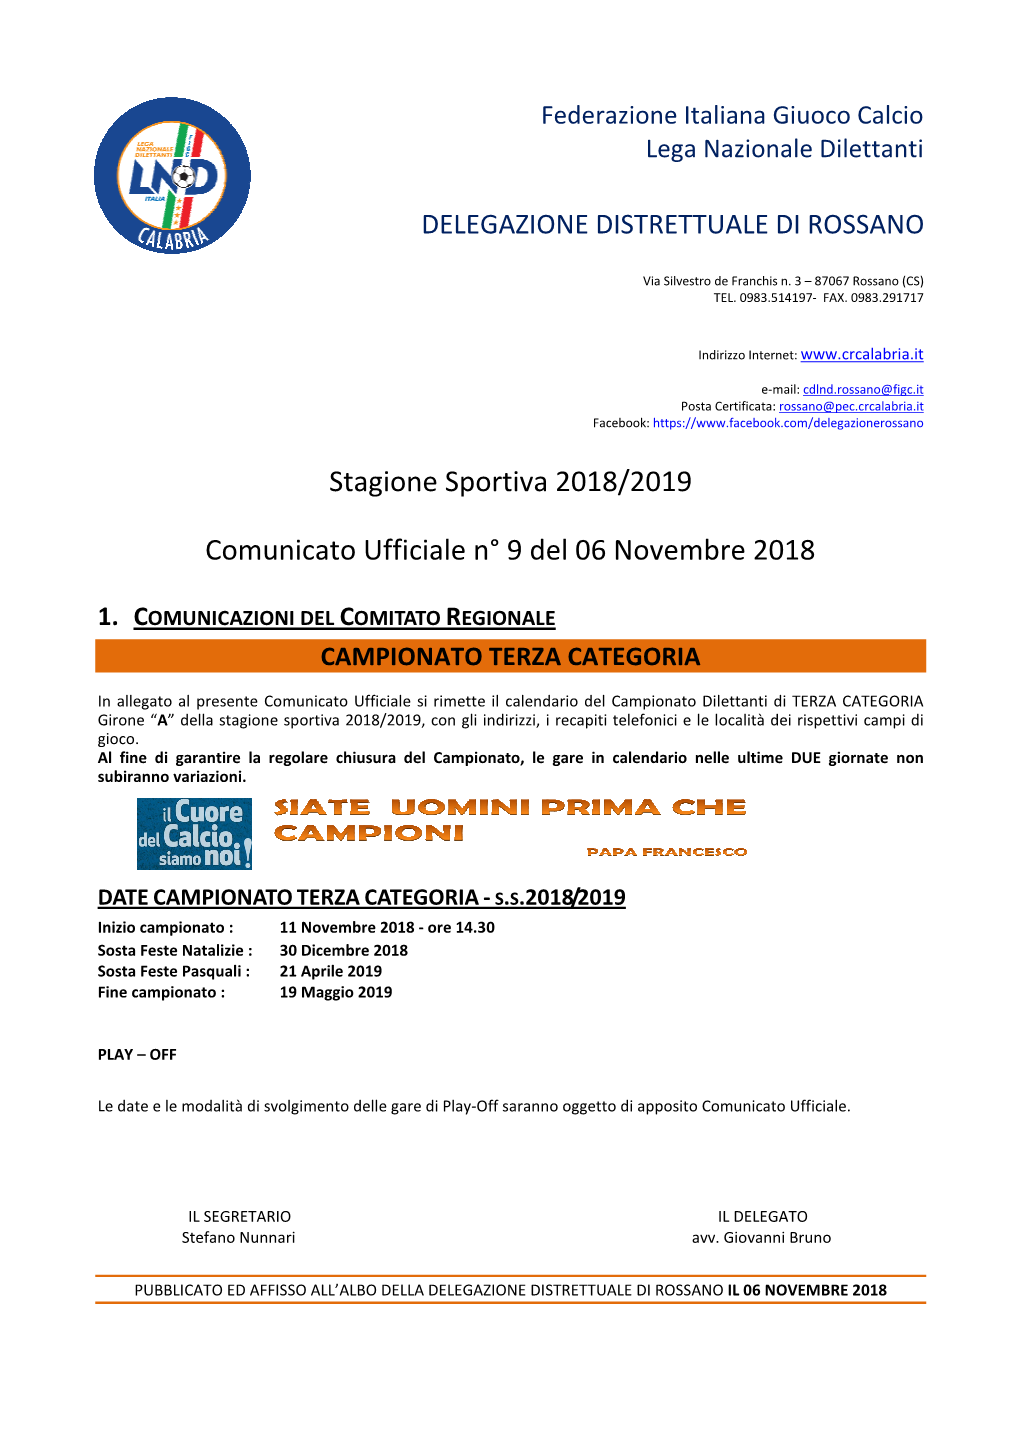 Stagione Sportiva 2018/2019 Comunicato Ufficiale N° 9 Del 06